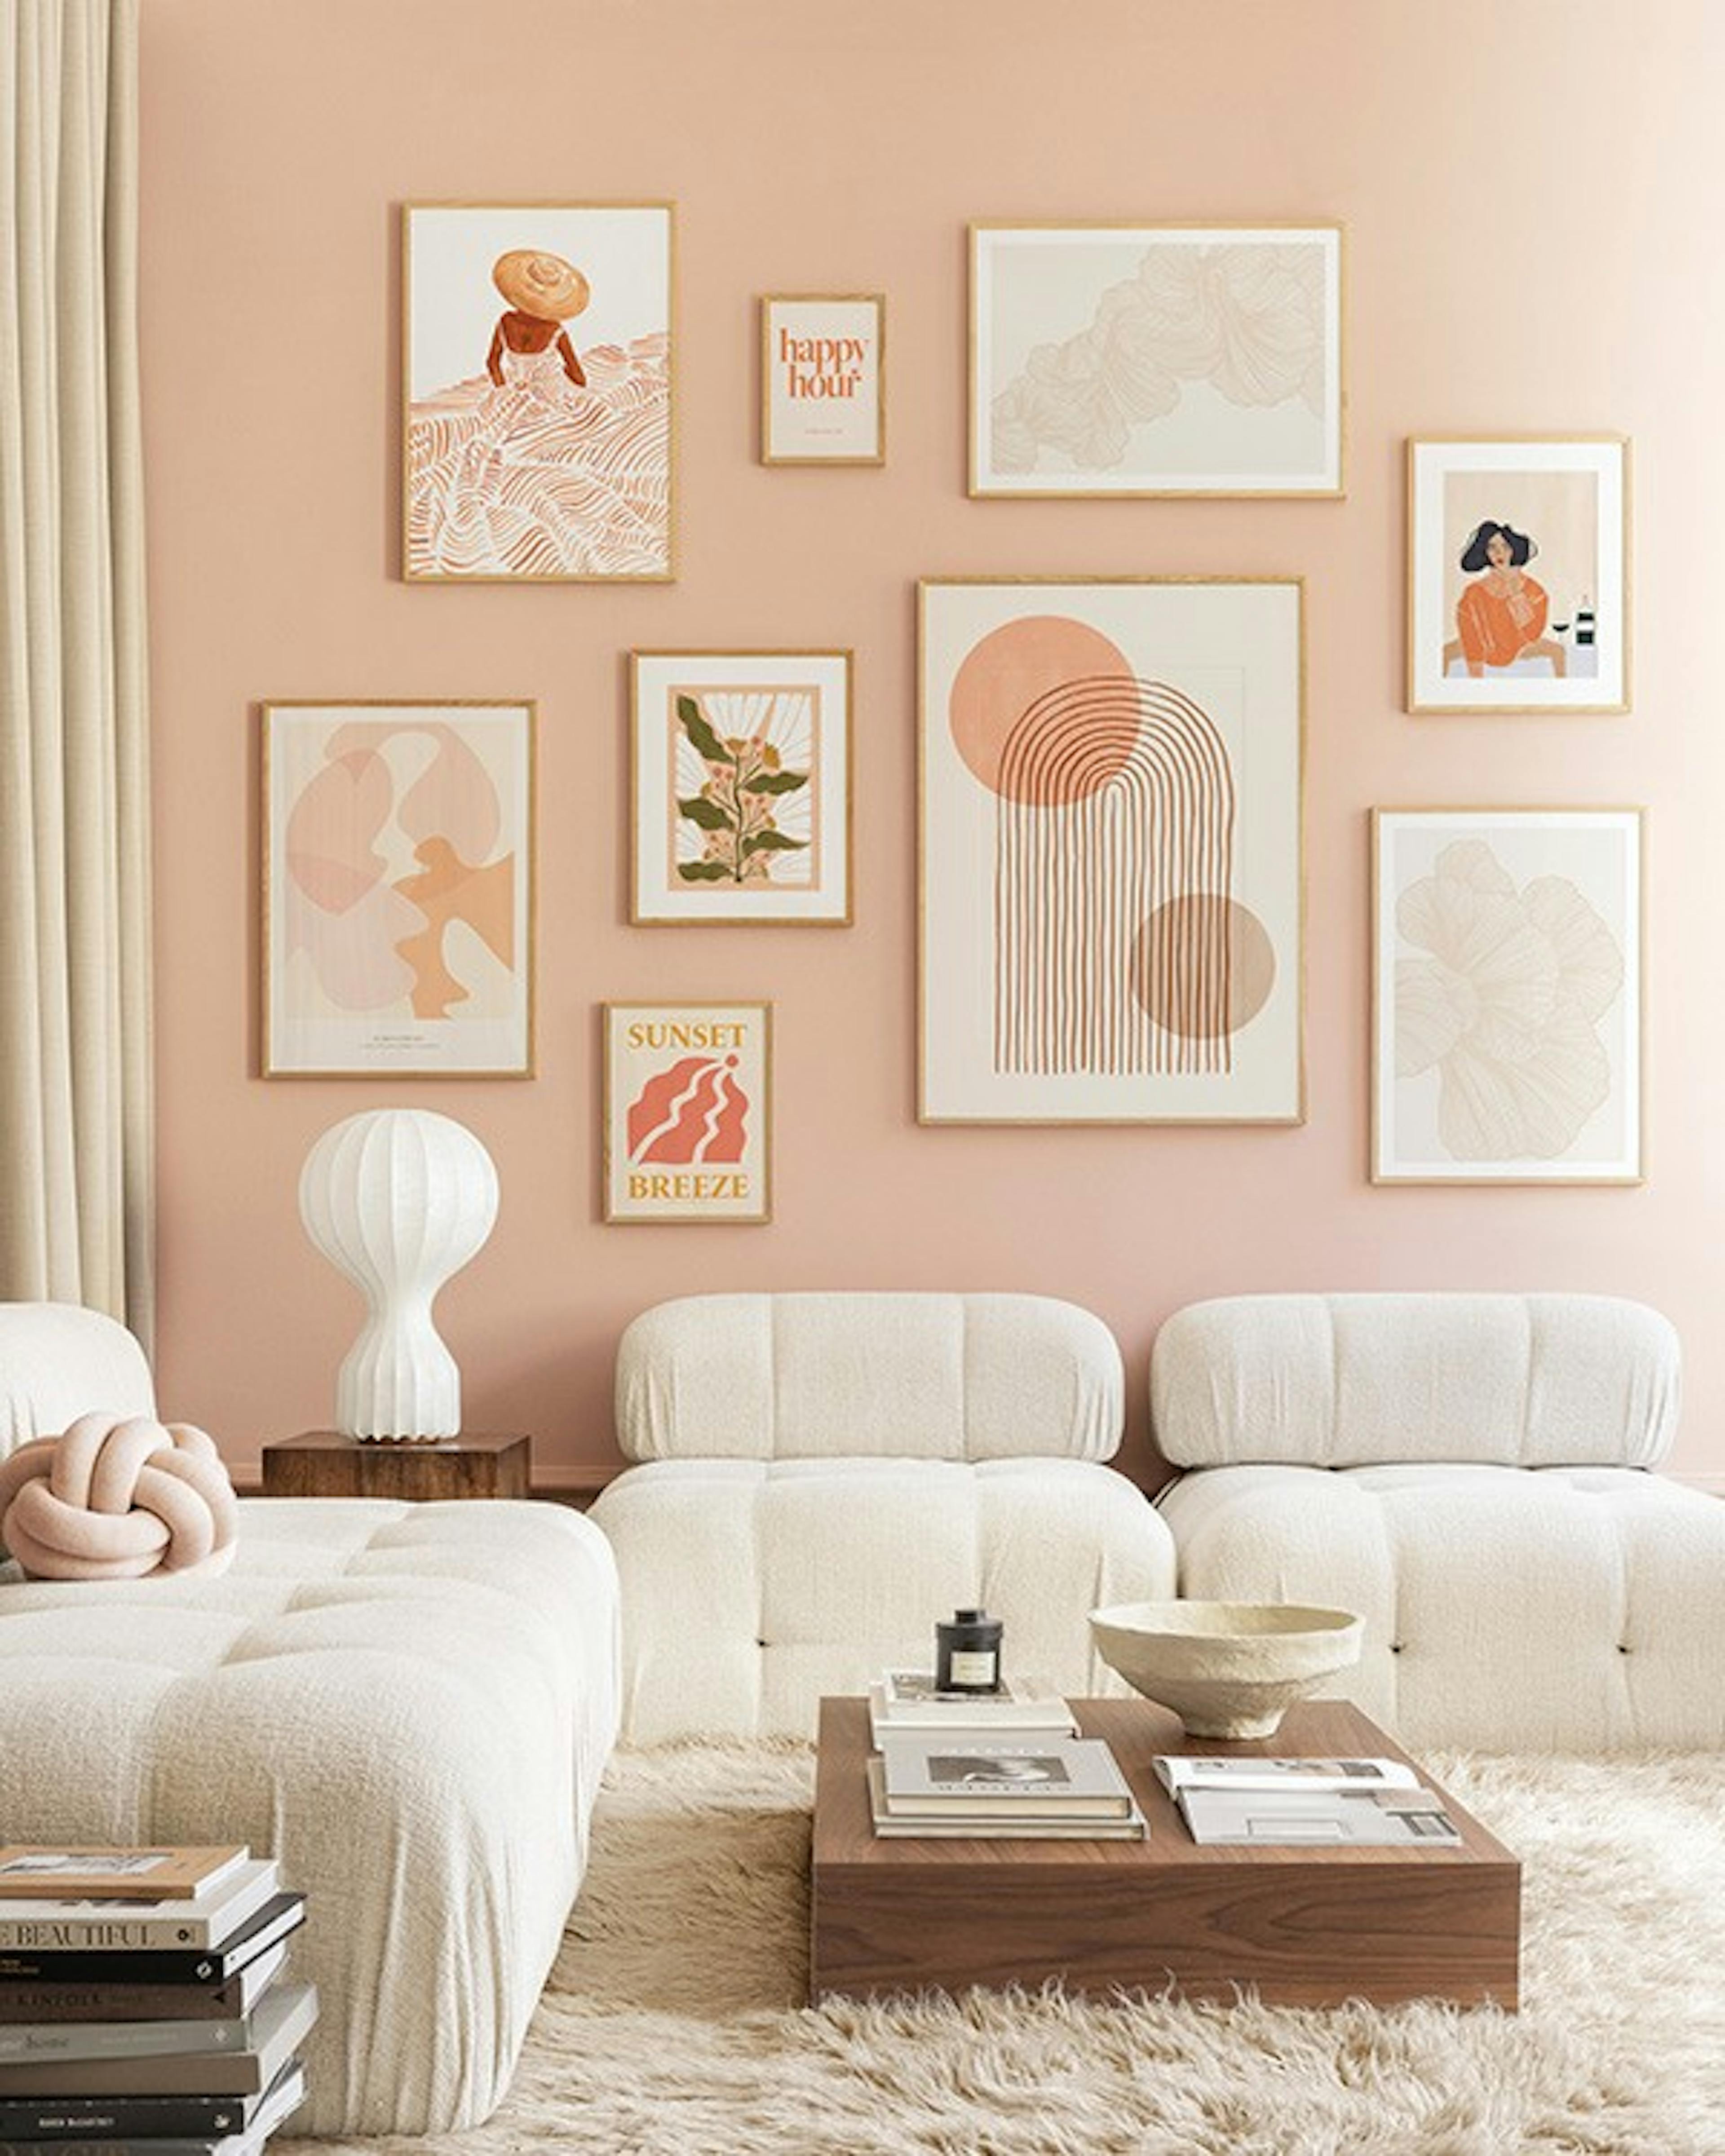 Peachy livingroom bilderwand